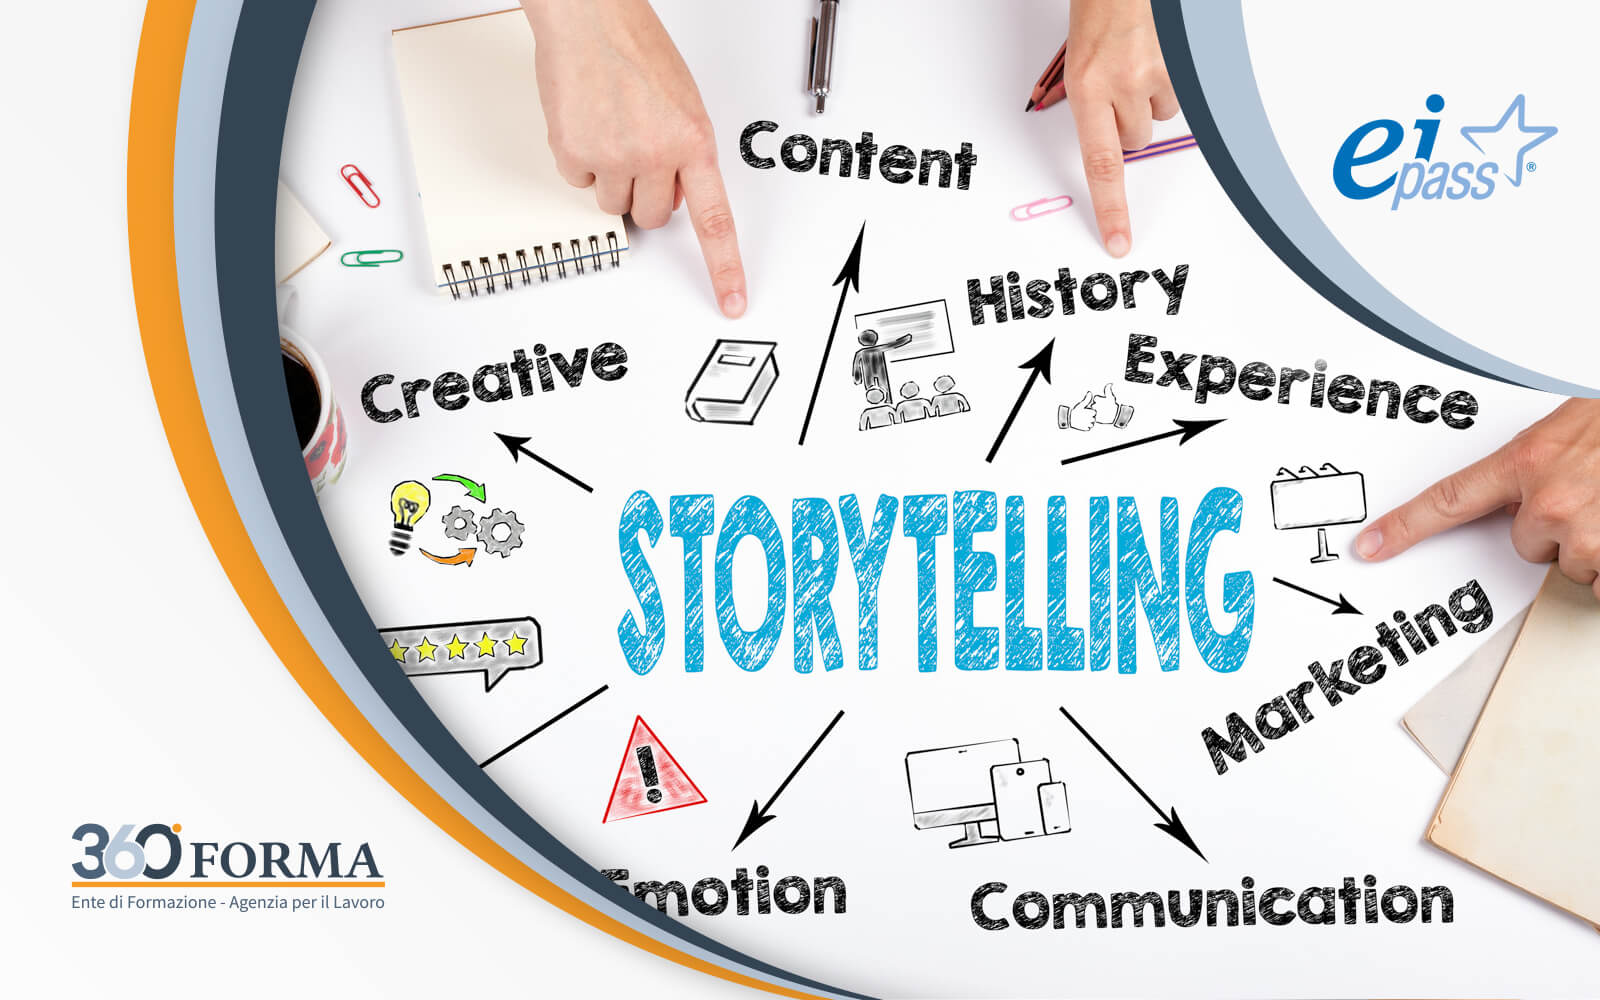 infografica con termini tecnici sul corso eipass storytelling